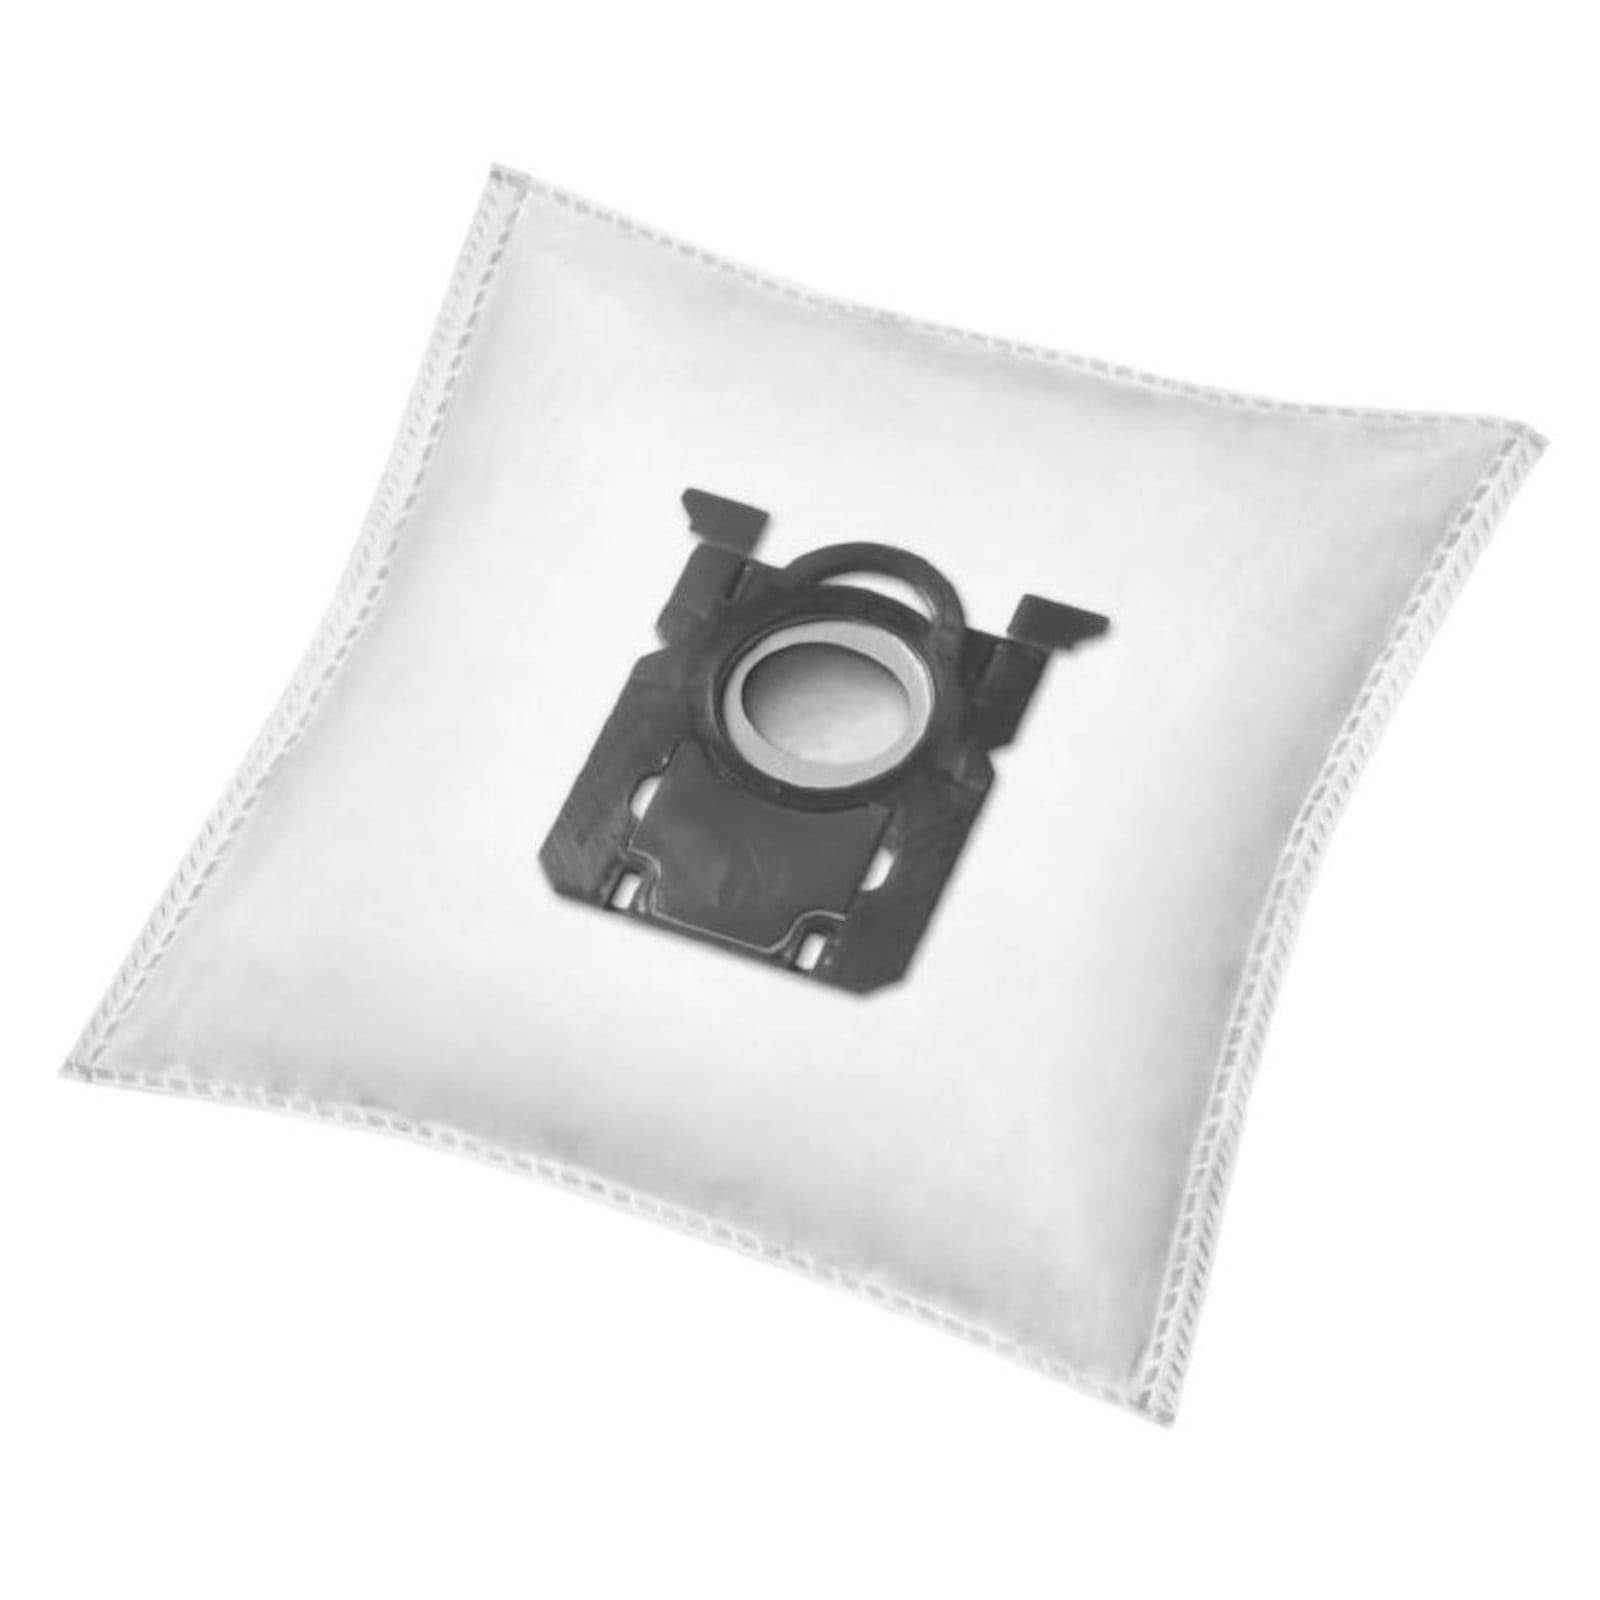 Reinica Staubsaugerbeutel passend für AEG Standard-Bag, 20er-Pack Staubbeutel Saugerbeutel Beutel